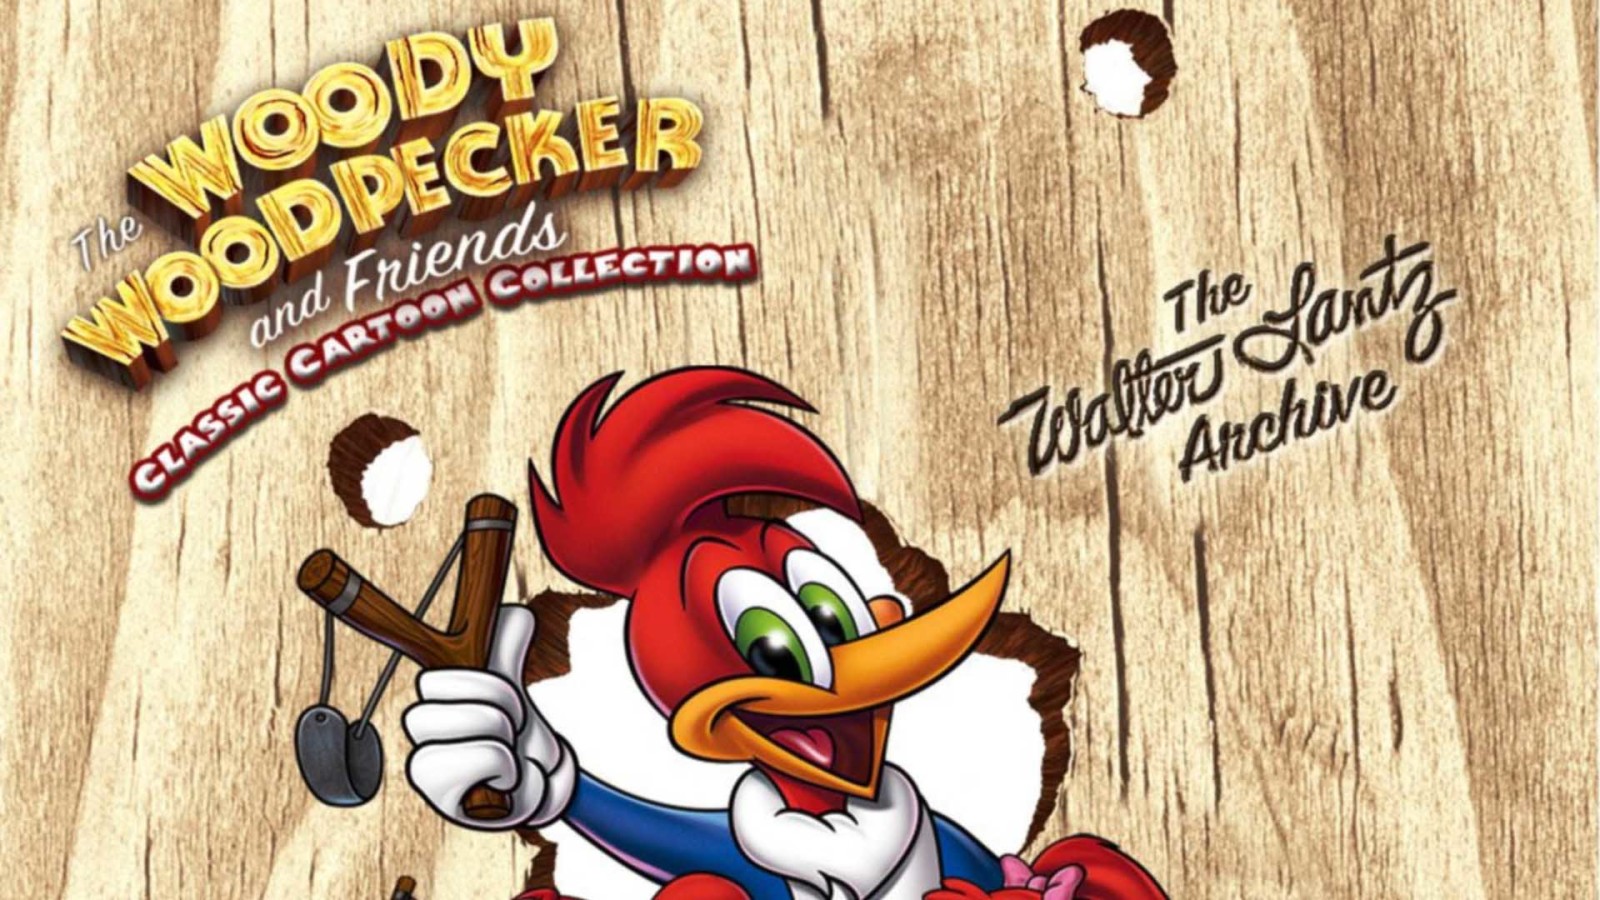 Woody Woodpecker Wallpaper Full HD For Desktop